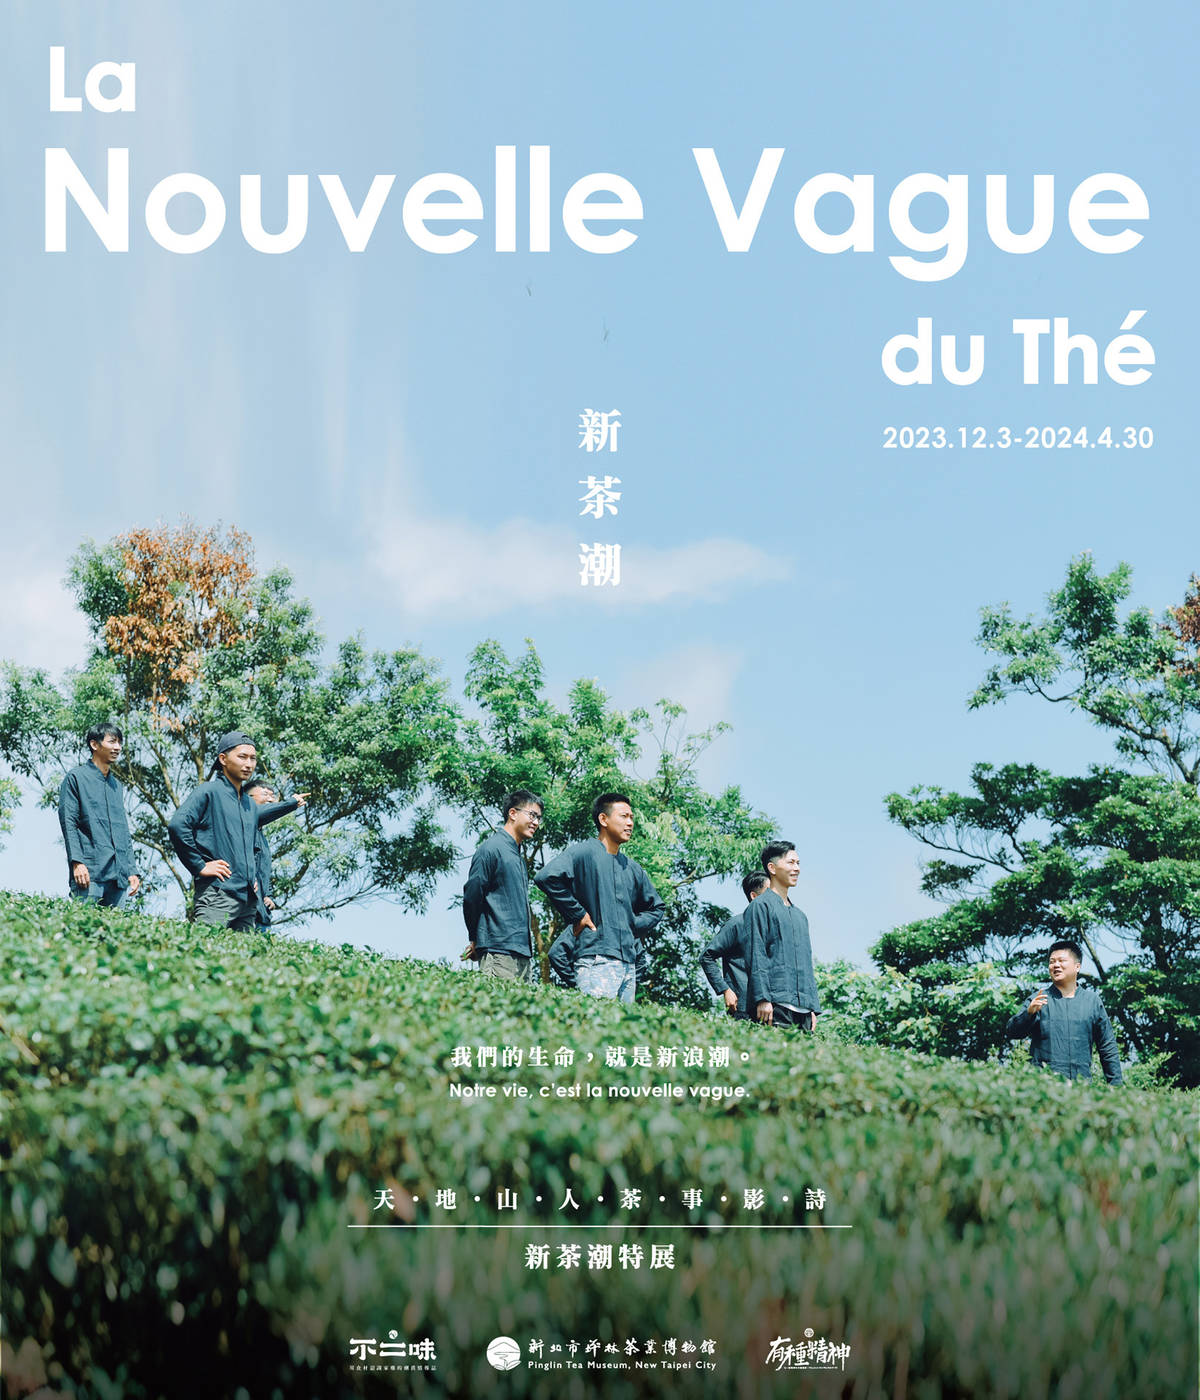 即日起至4月30日茶博館於館內推出超酷的「新茶潮La Nouvelle Vague du Thé」特展